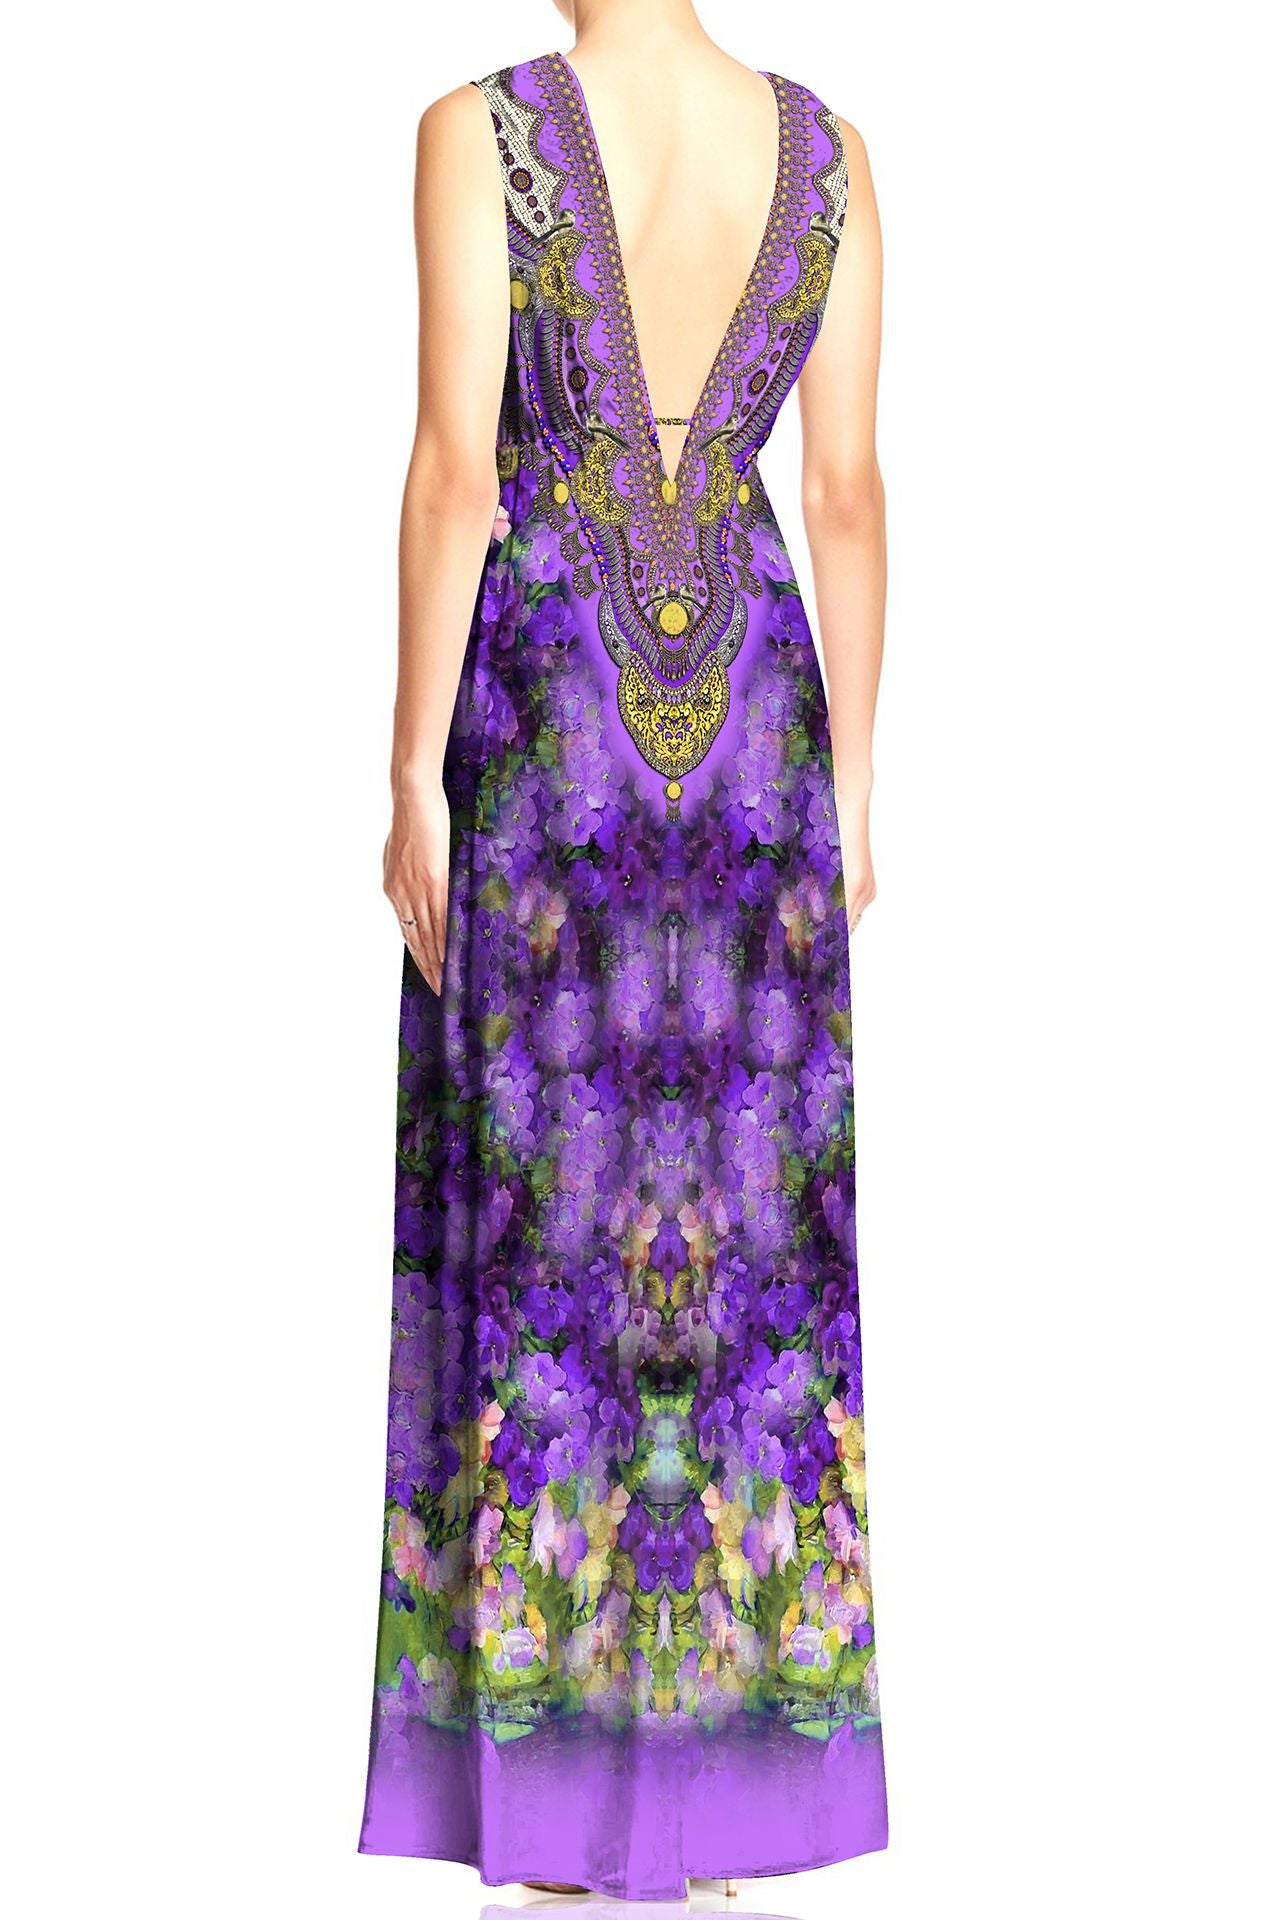 Designer  Hi Slit V Neck Maxi Dress in Purple Floral Print